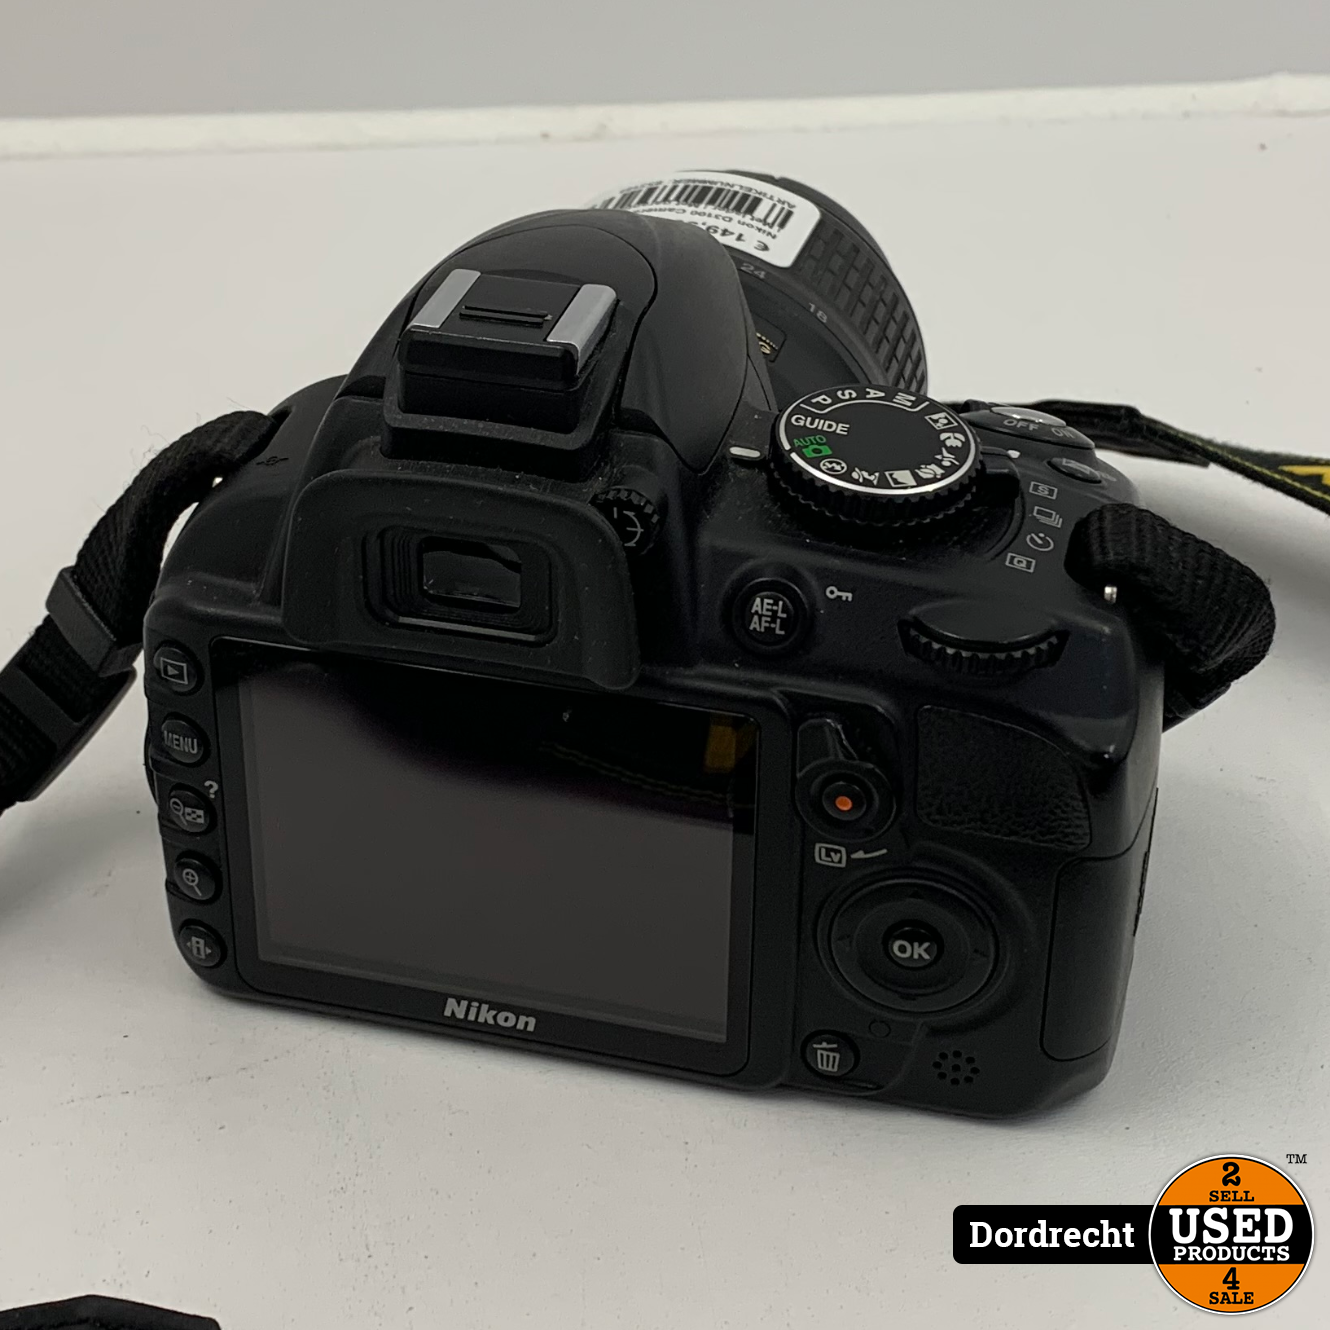 Bedreven overloop zuurgraad Nikon D3100 Camera + 18-55mm Lens | Met lader | Met garantie - Used  Products Dordrecht